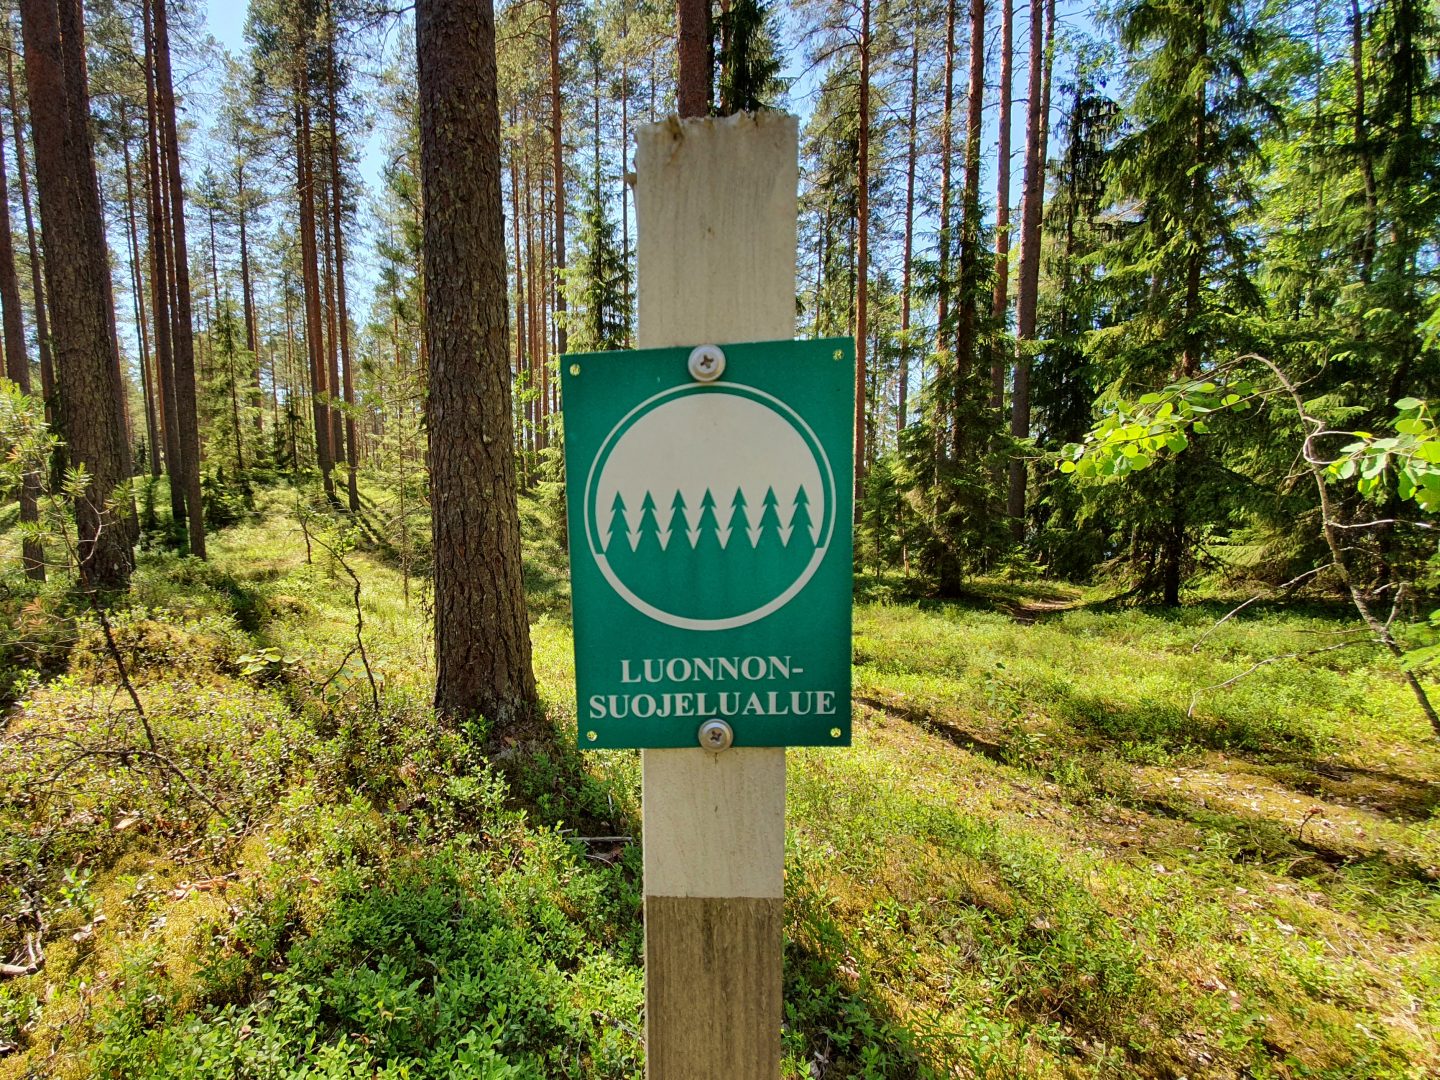 Kuvassa näkyy vihreä pylvääseen kiinnitetty merkki, jossa lukee 